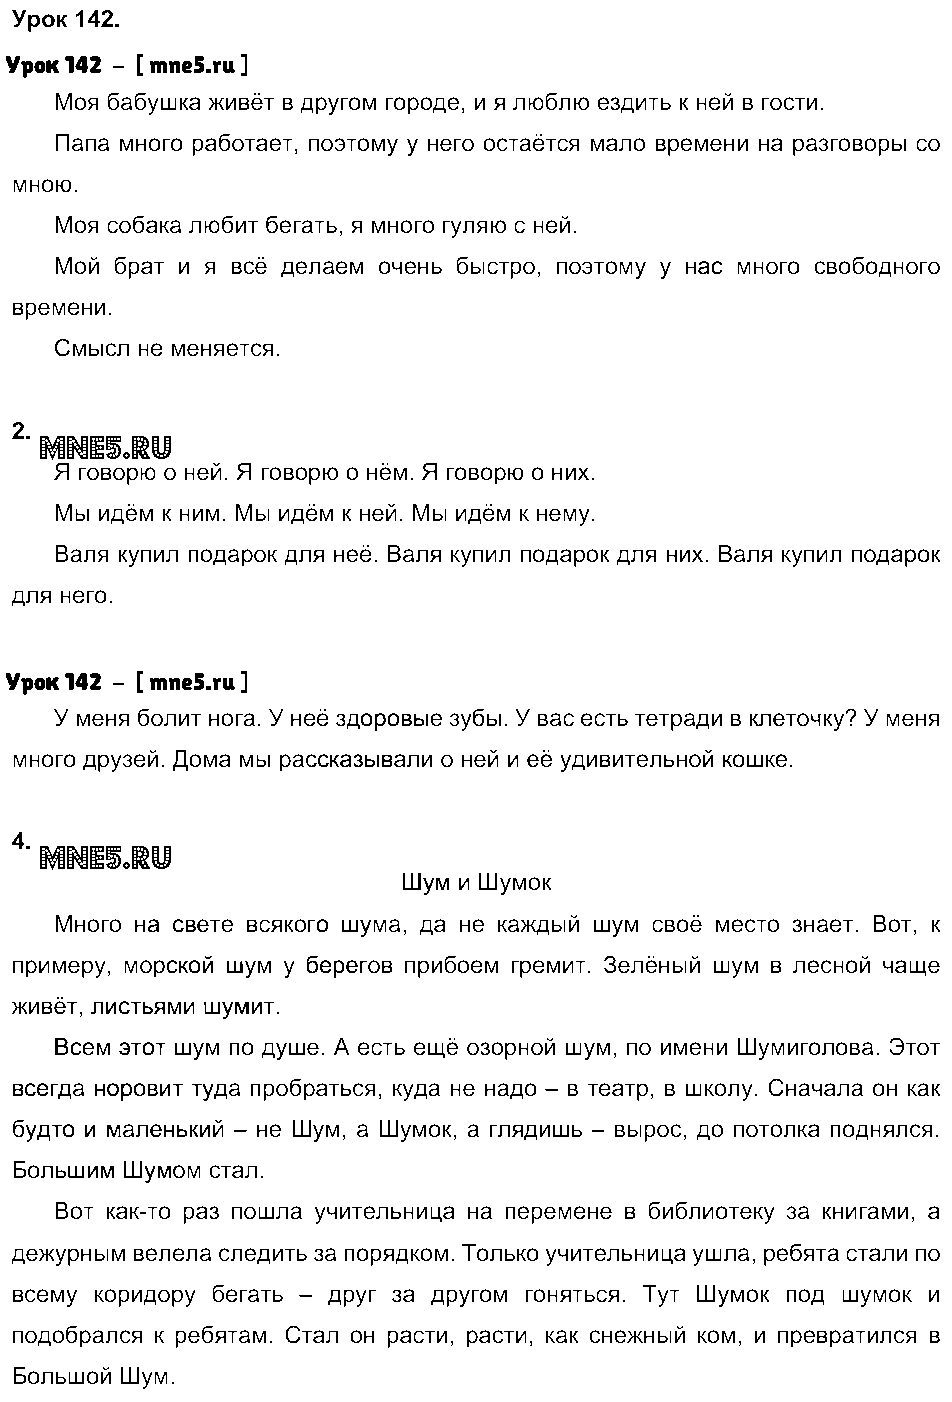 ГДЗ Русский язык 3 класс - Урок 142